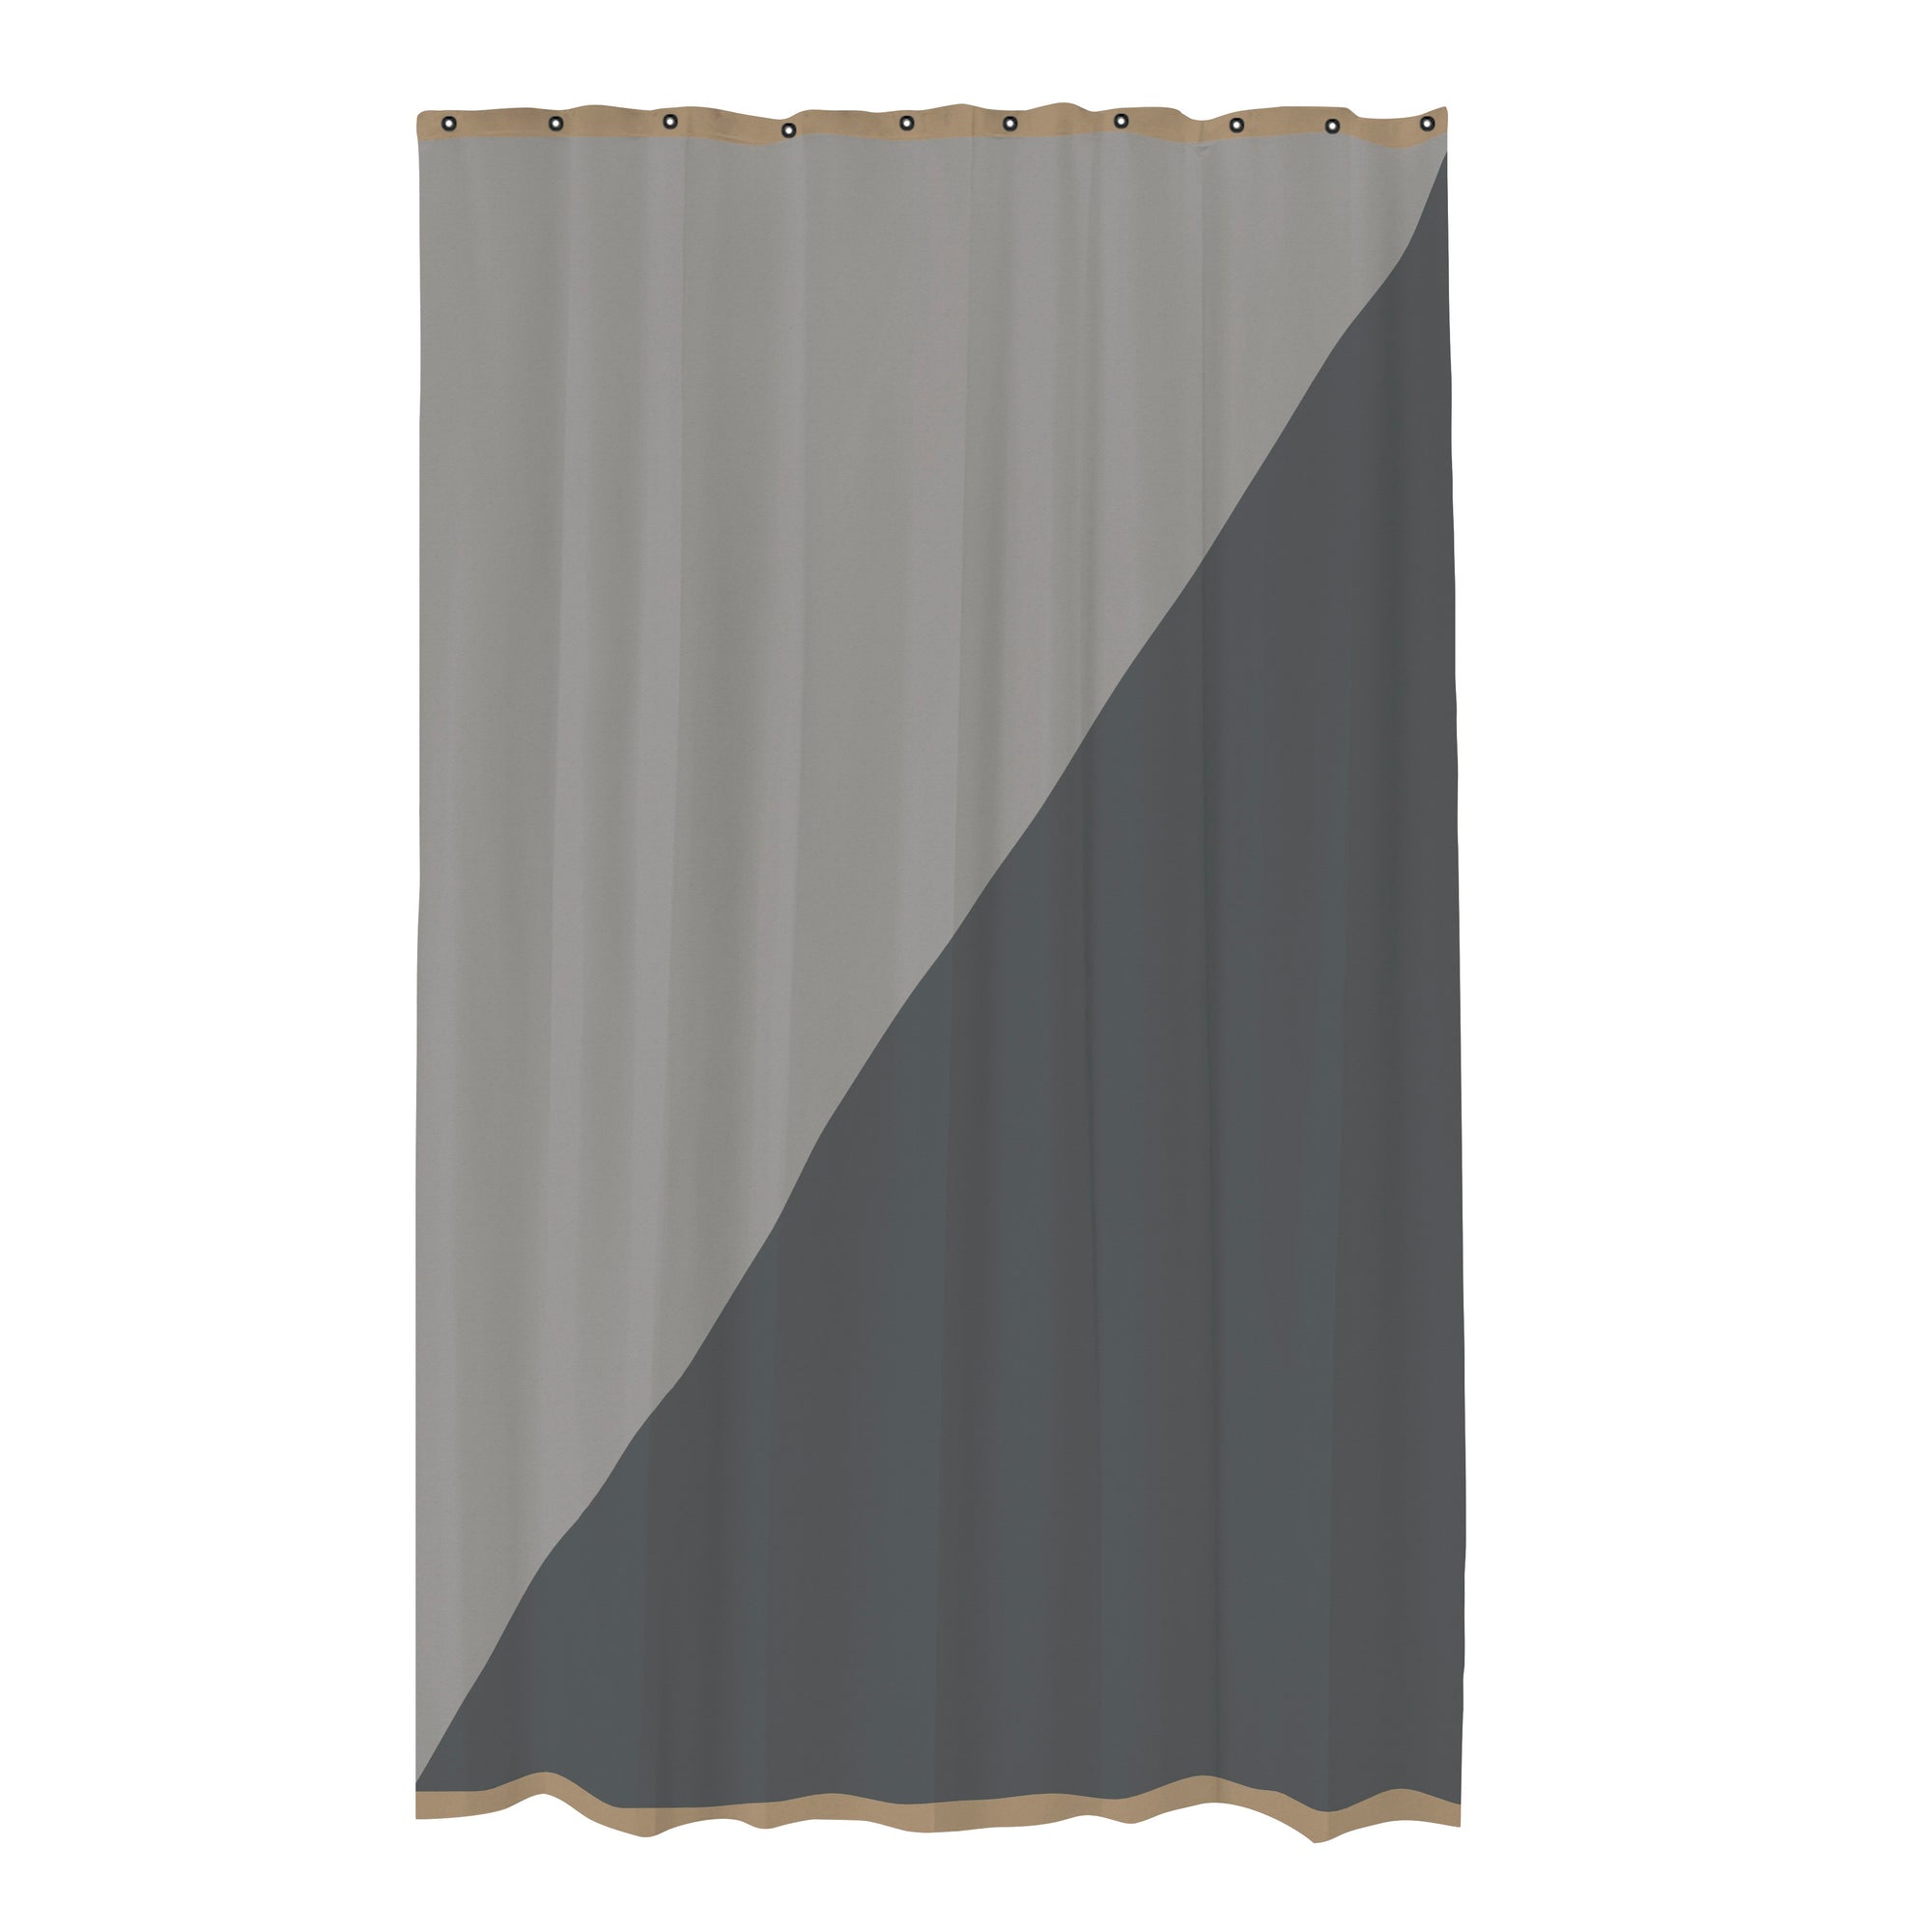 Duet Shower Curtain- Light Grey